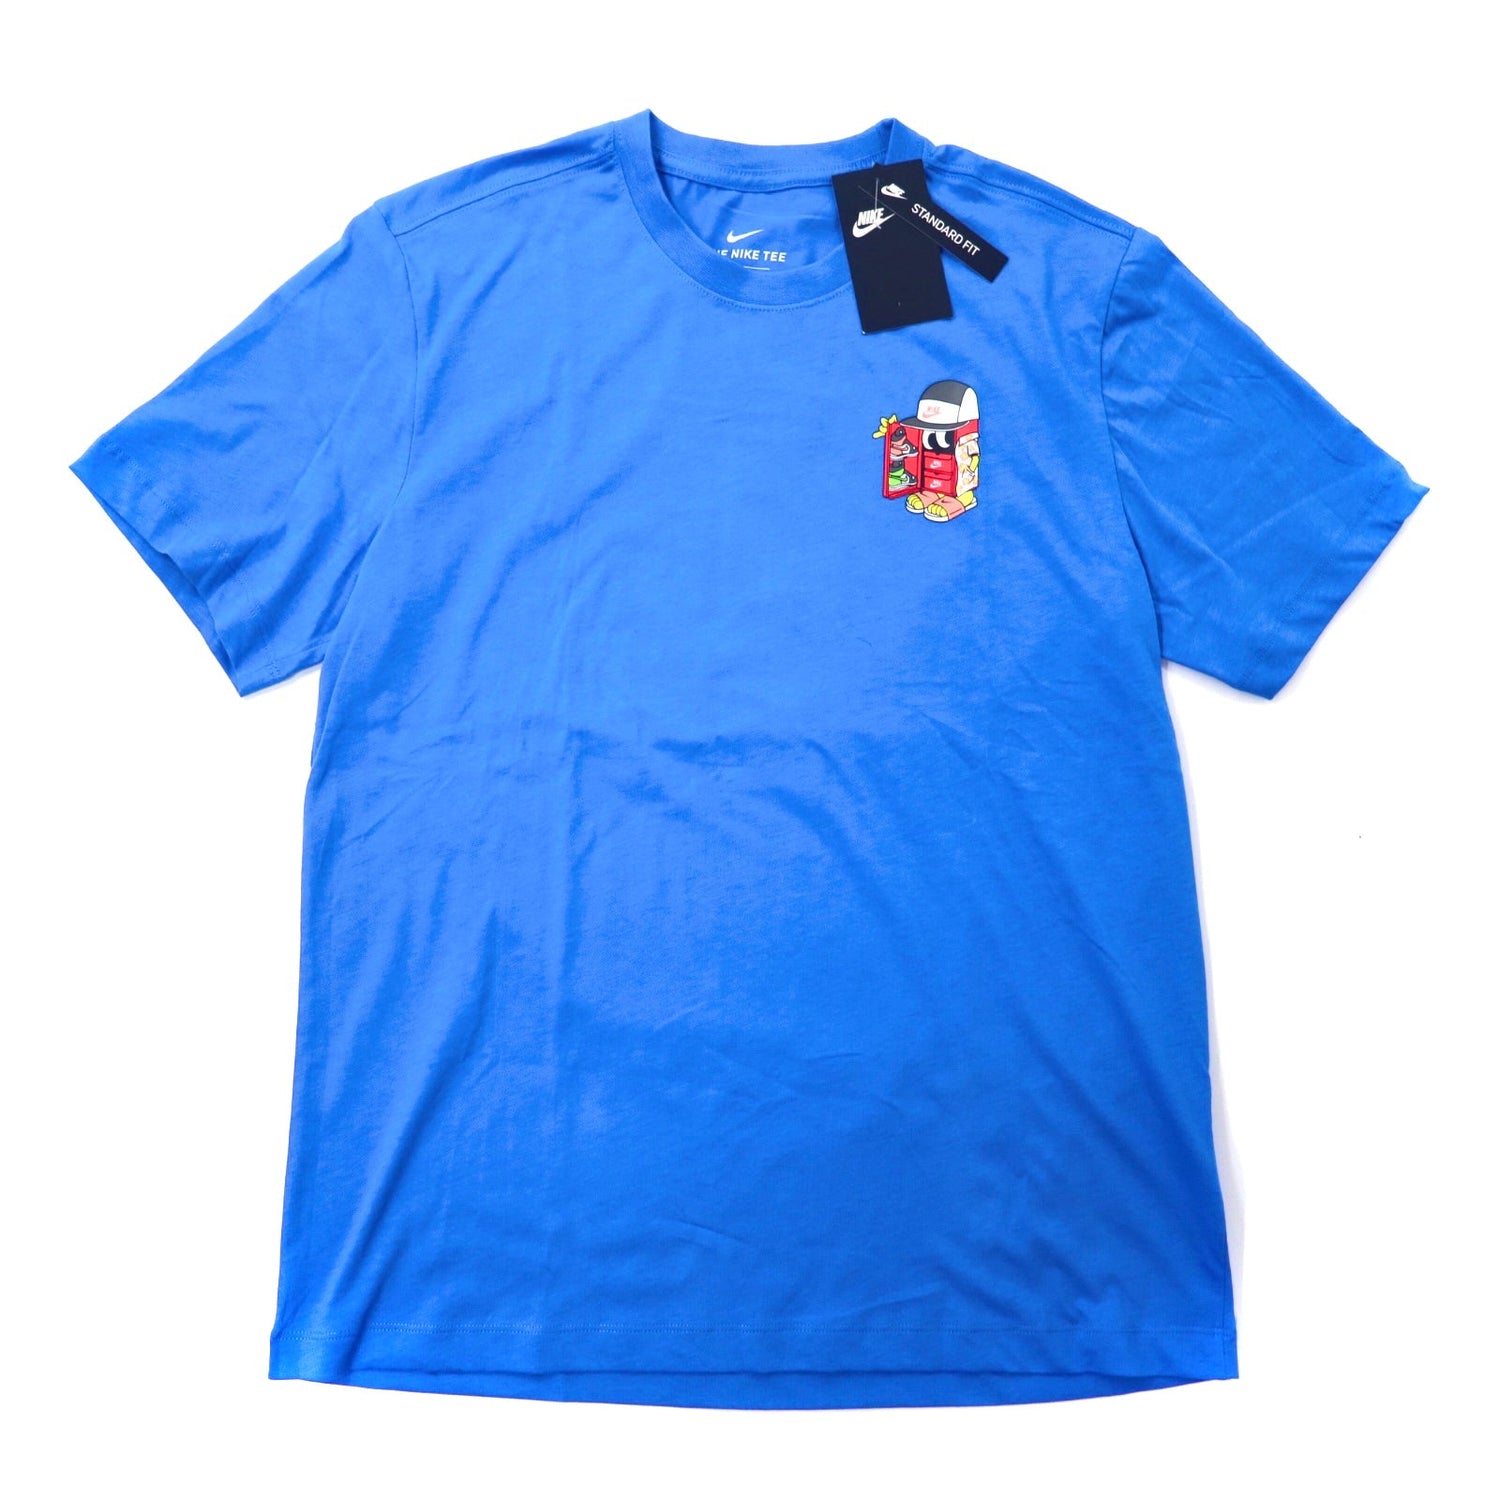 NIKE シューボックスS/S Tシャツ L ブルー DD1261-435 2021年モデル 未使用品-NIKE-古着